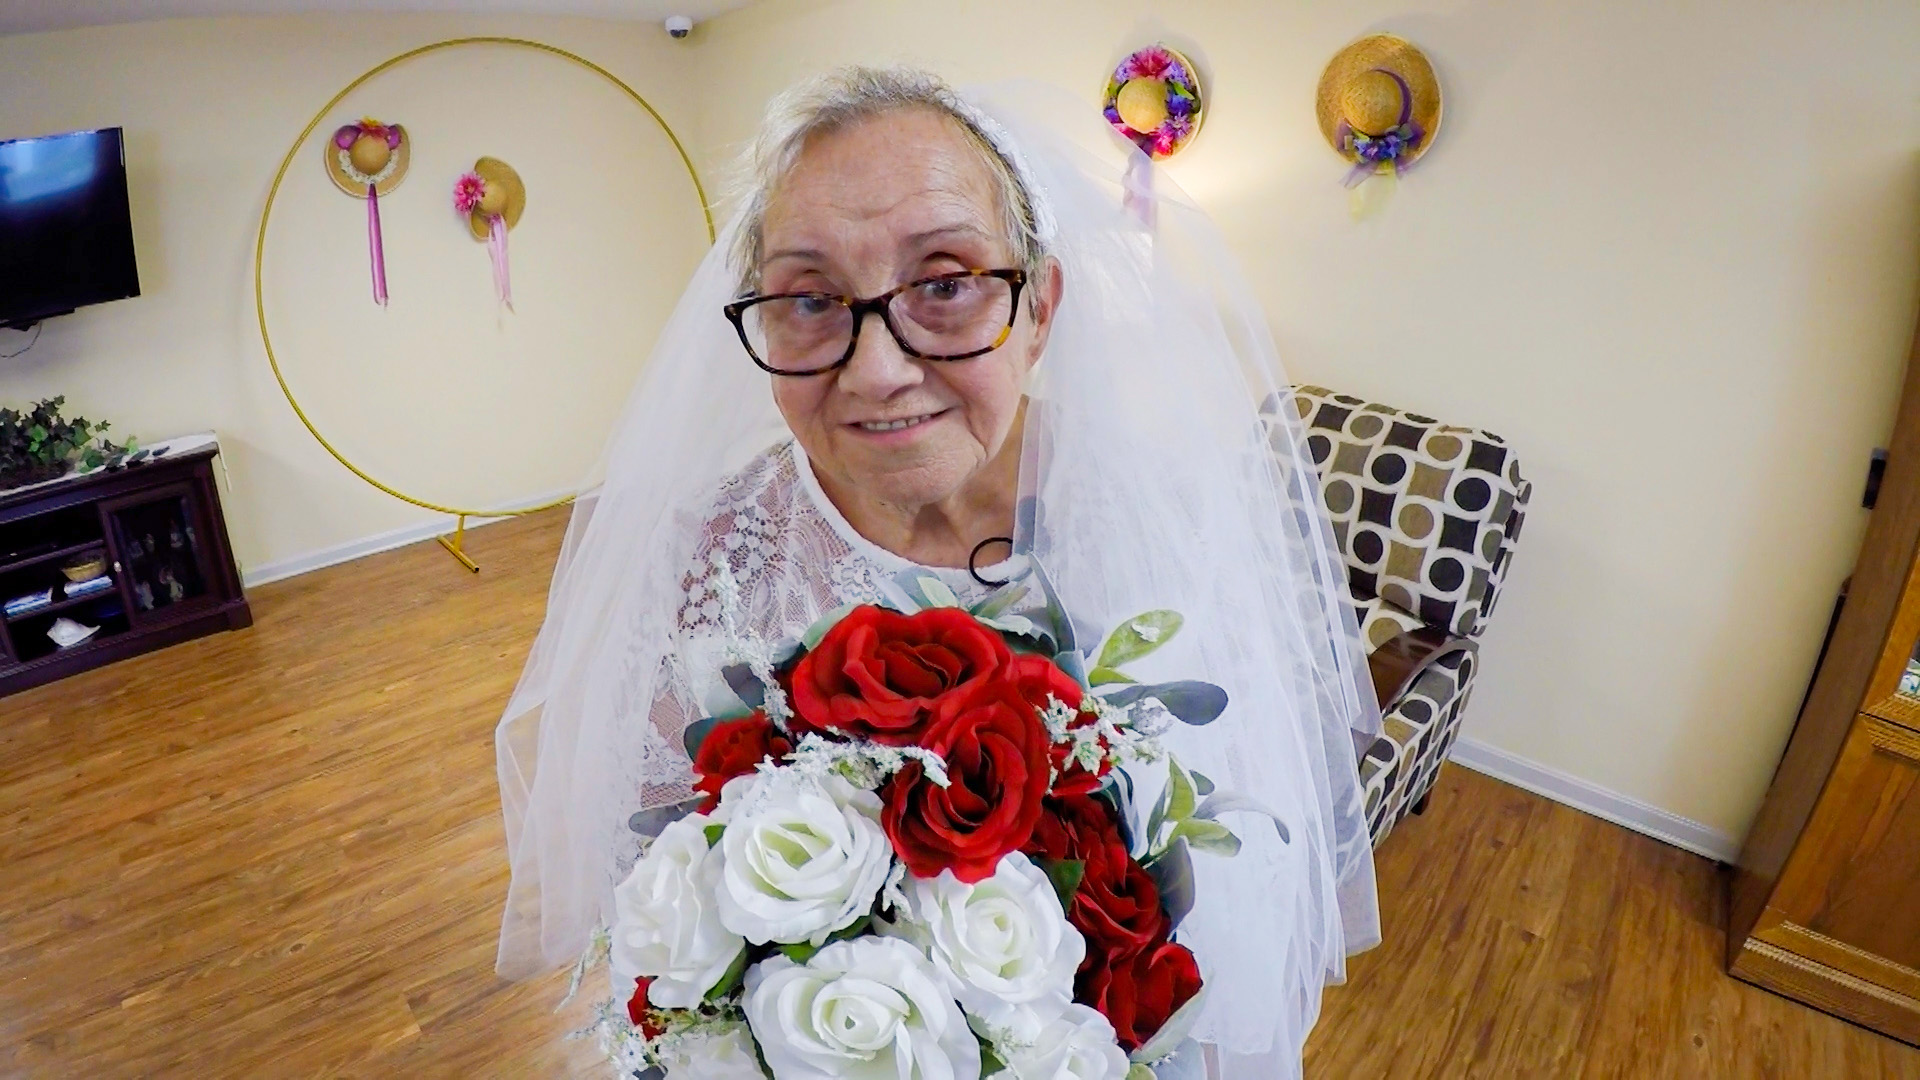 زن 77 ساله با خودش ازدواج کرد!